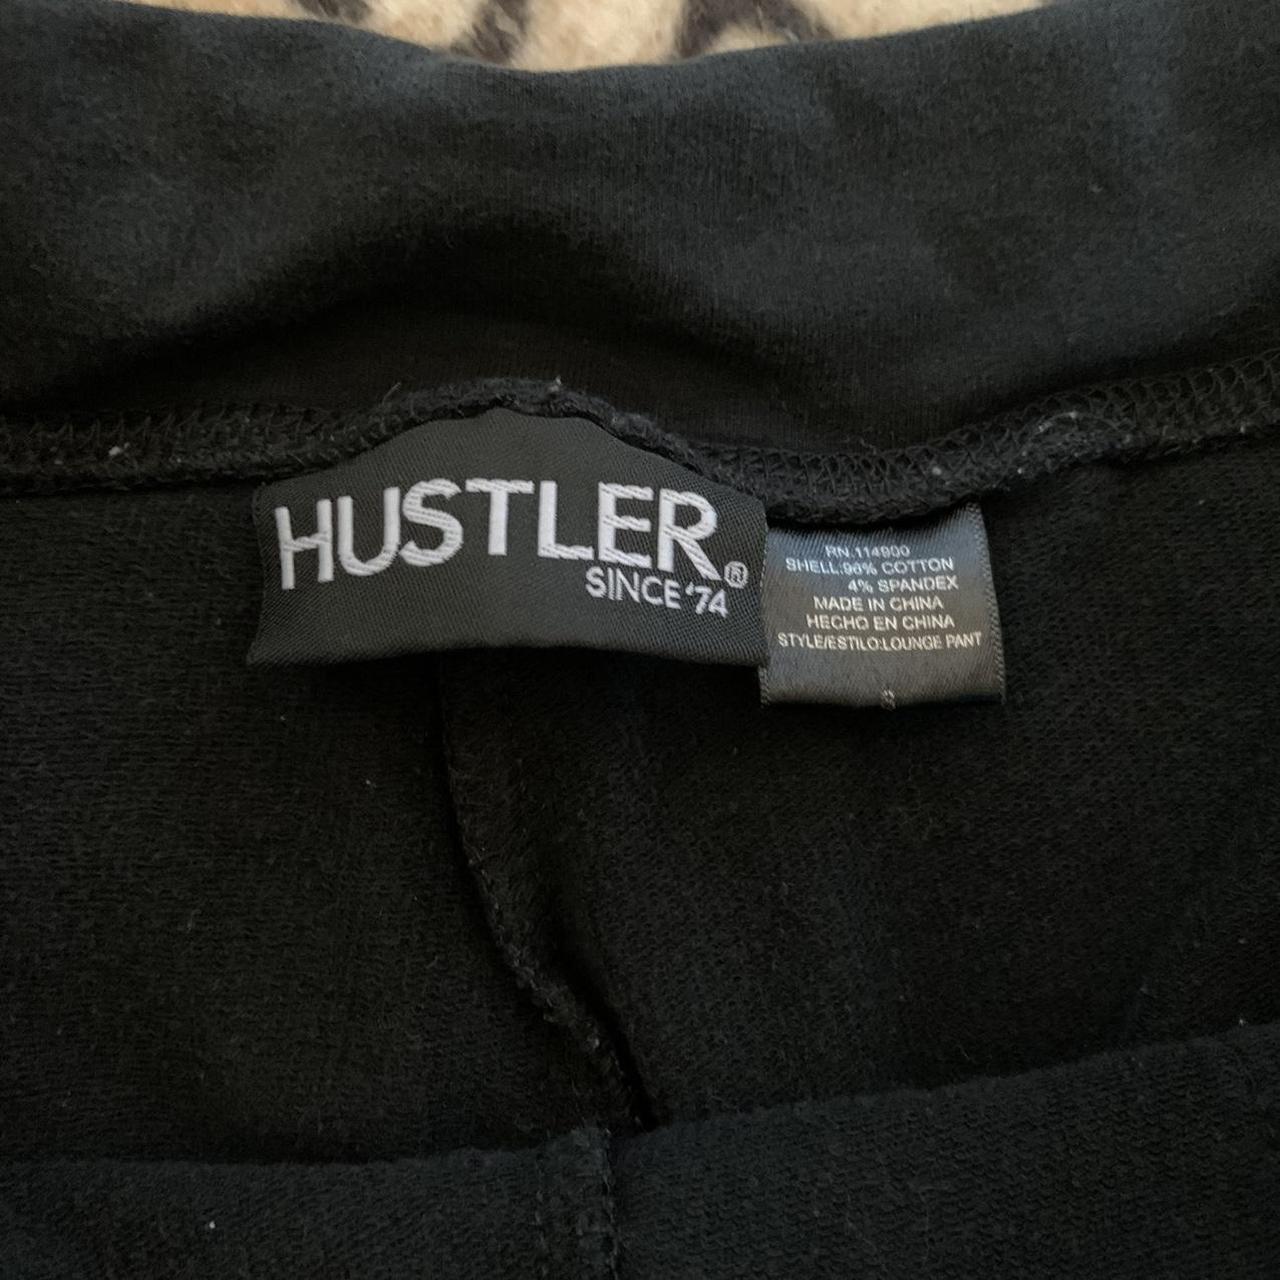 Hustler extremely low rise black track pants size... - Depop